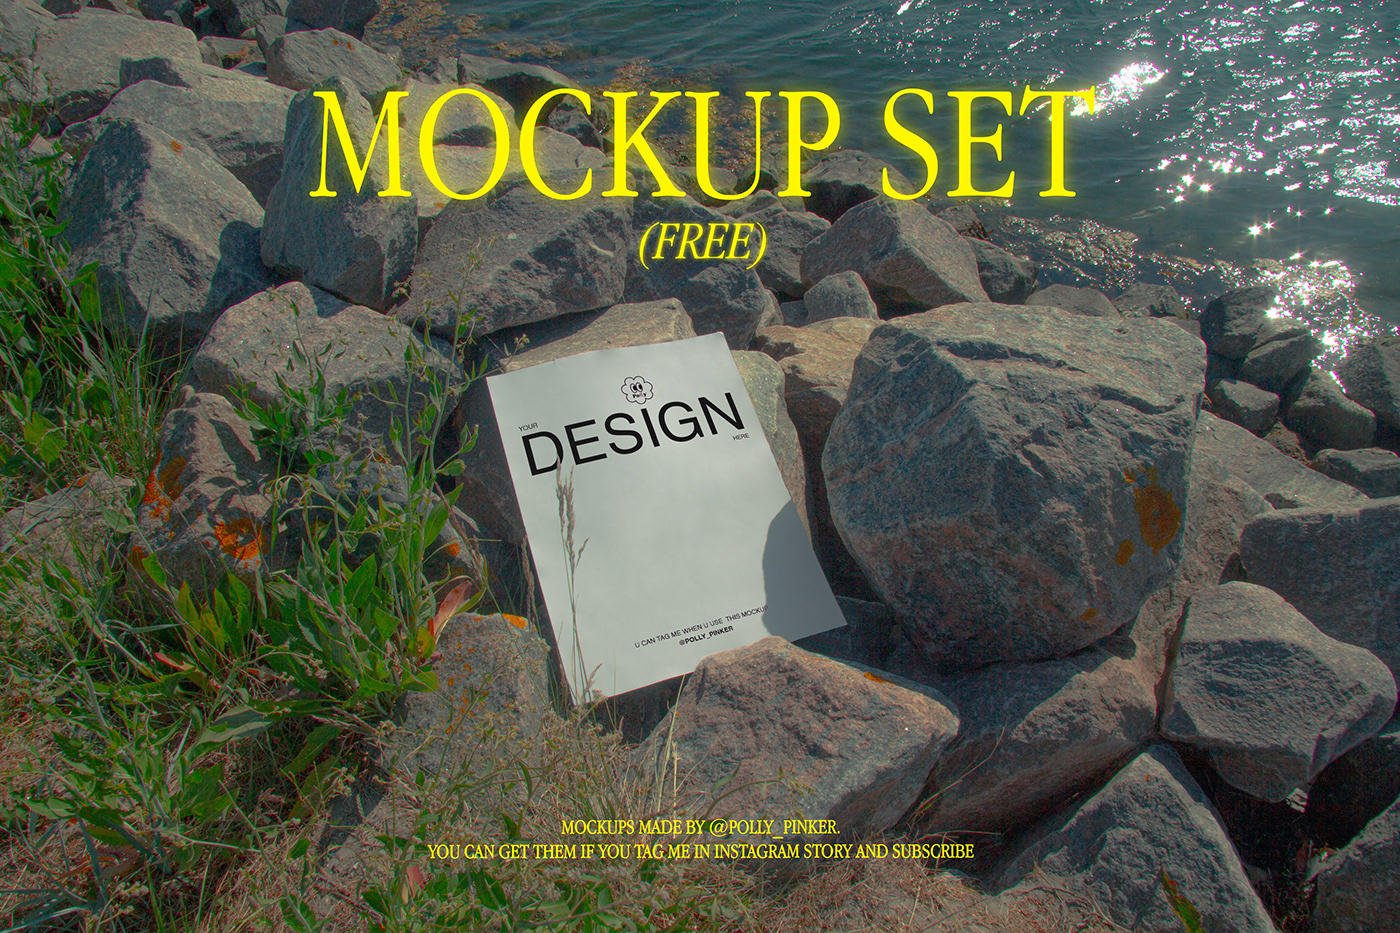 Mockup template mockup free design adobe designinspiration Behance poster Poster Mockup